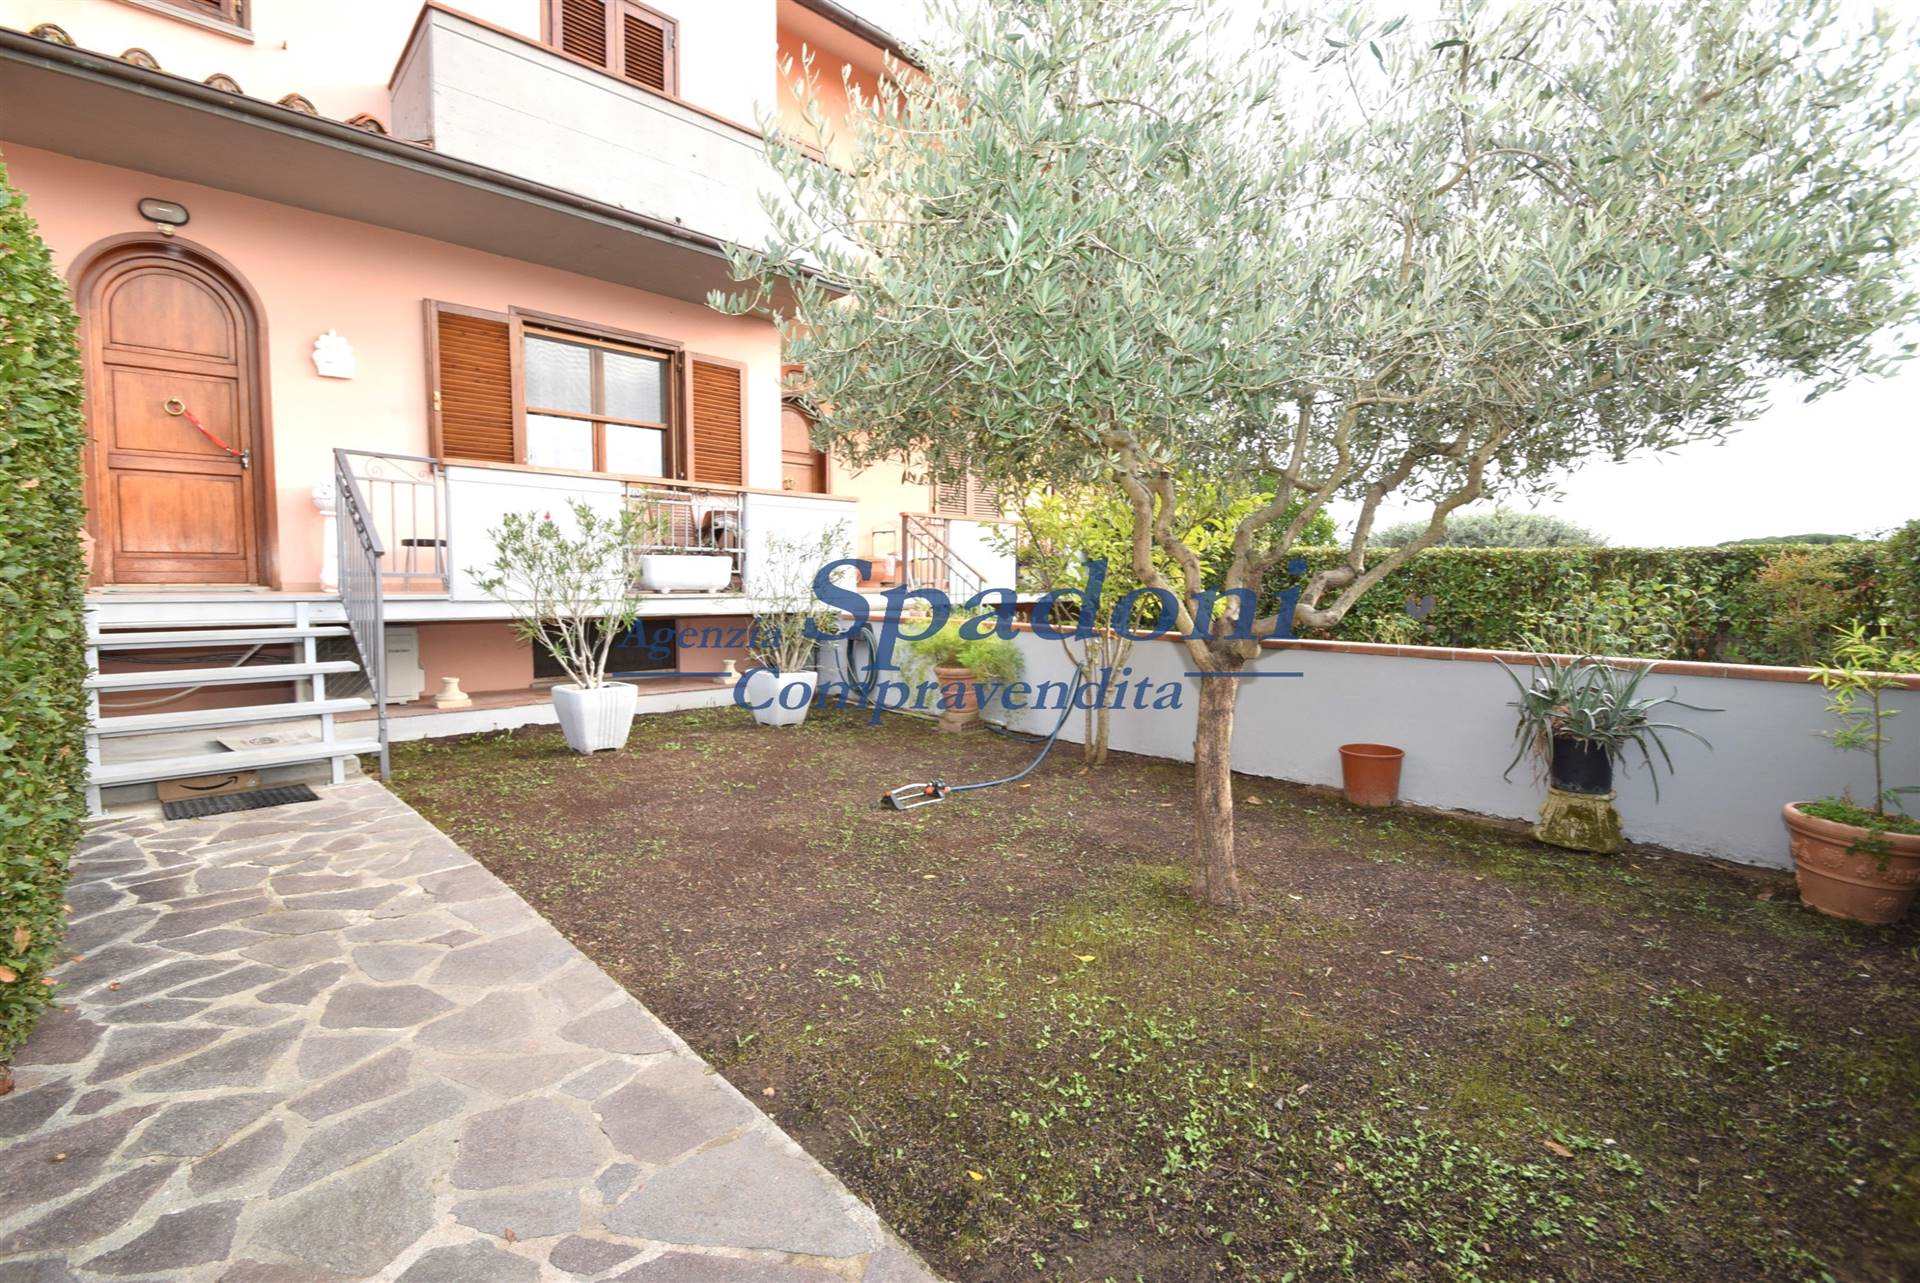 Villa a Schiera in vendita a Uzzano, 9 locali, prezzo € 388.000 | PortaleAgenzieImmobiliari.it